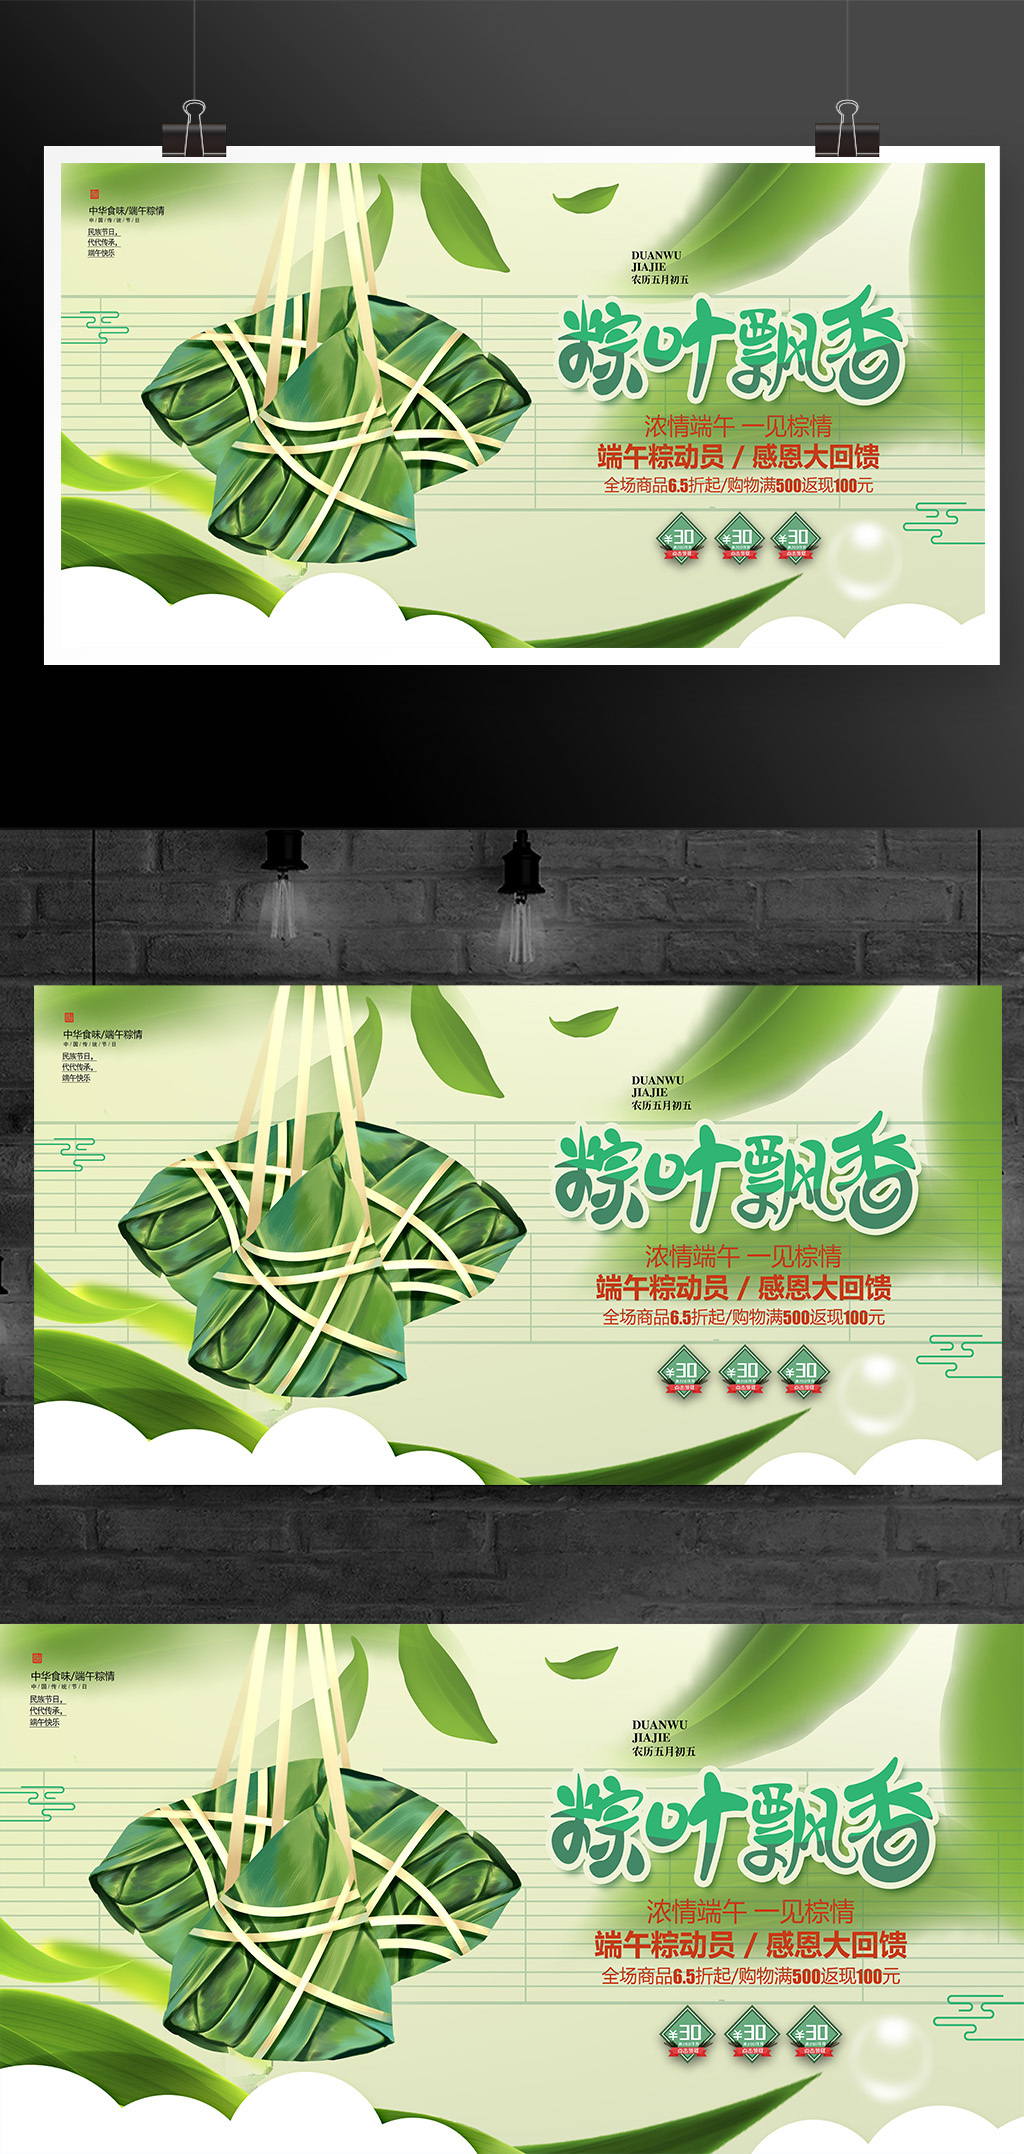 时尚大气粽叶飘香端午节促销宣传展板设计